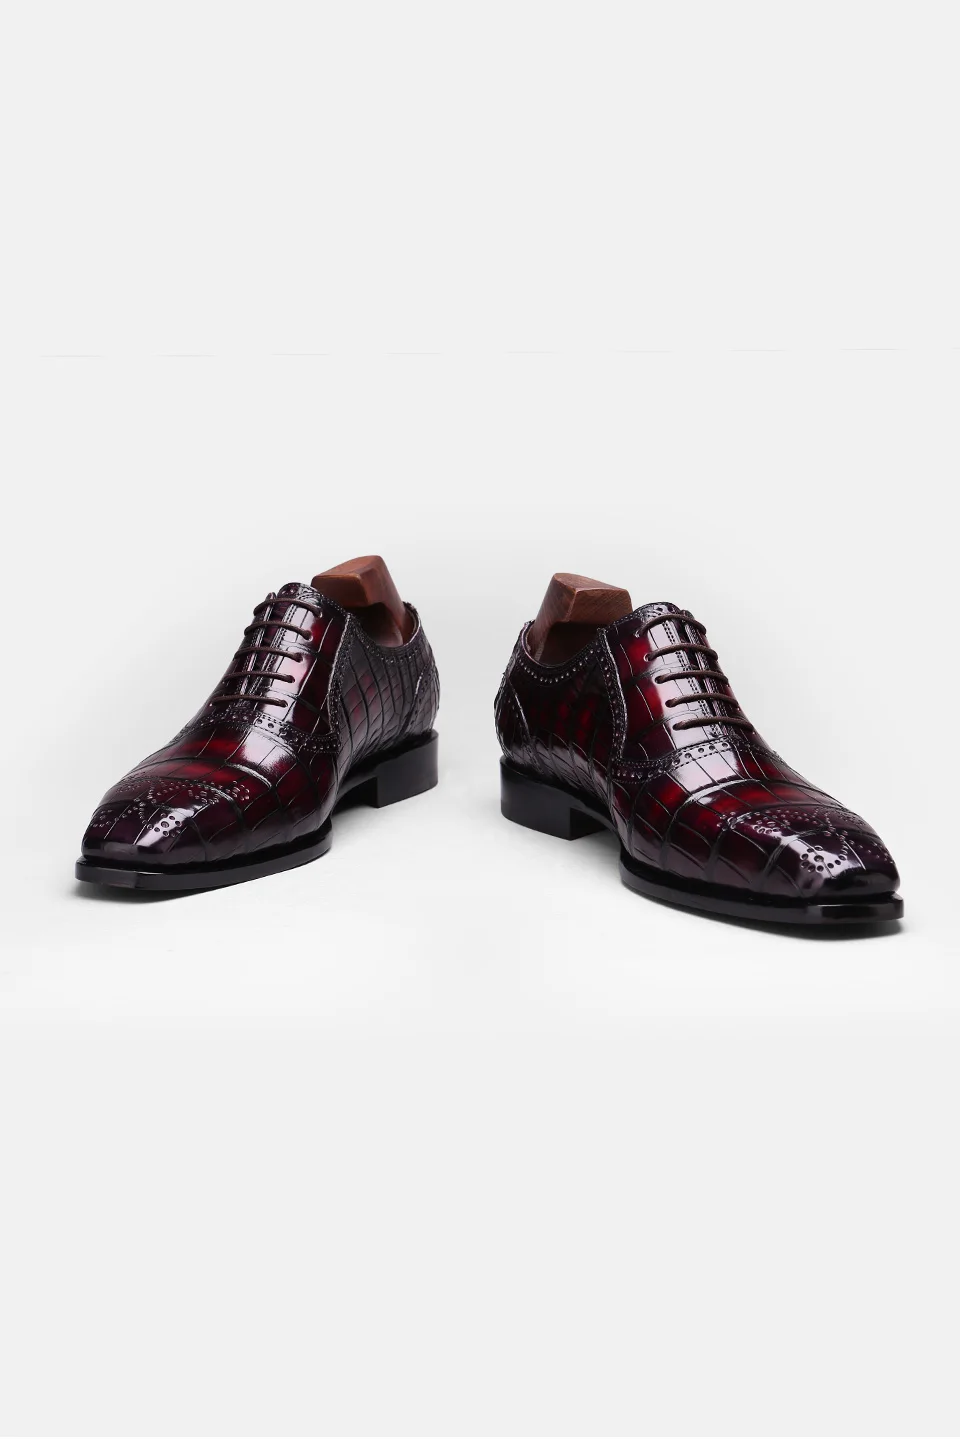 DIMY/2019 г. Ручная работа, изготовленная на заказ, Высококачественная обувь из крокодиловой кожи Goodyear мужская официальная деловой галстук с